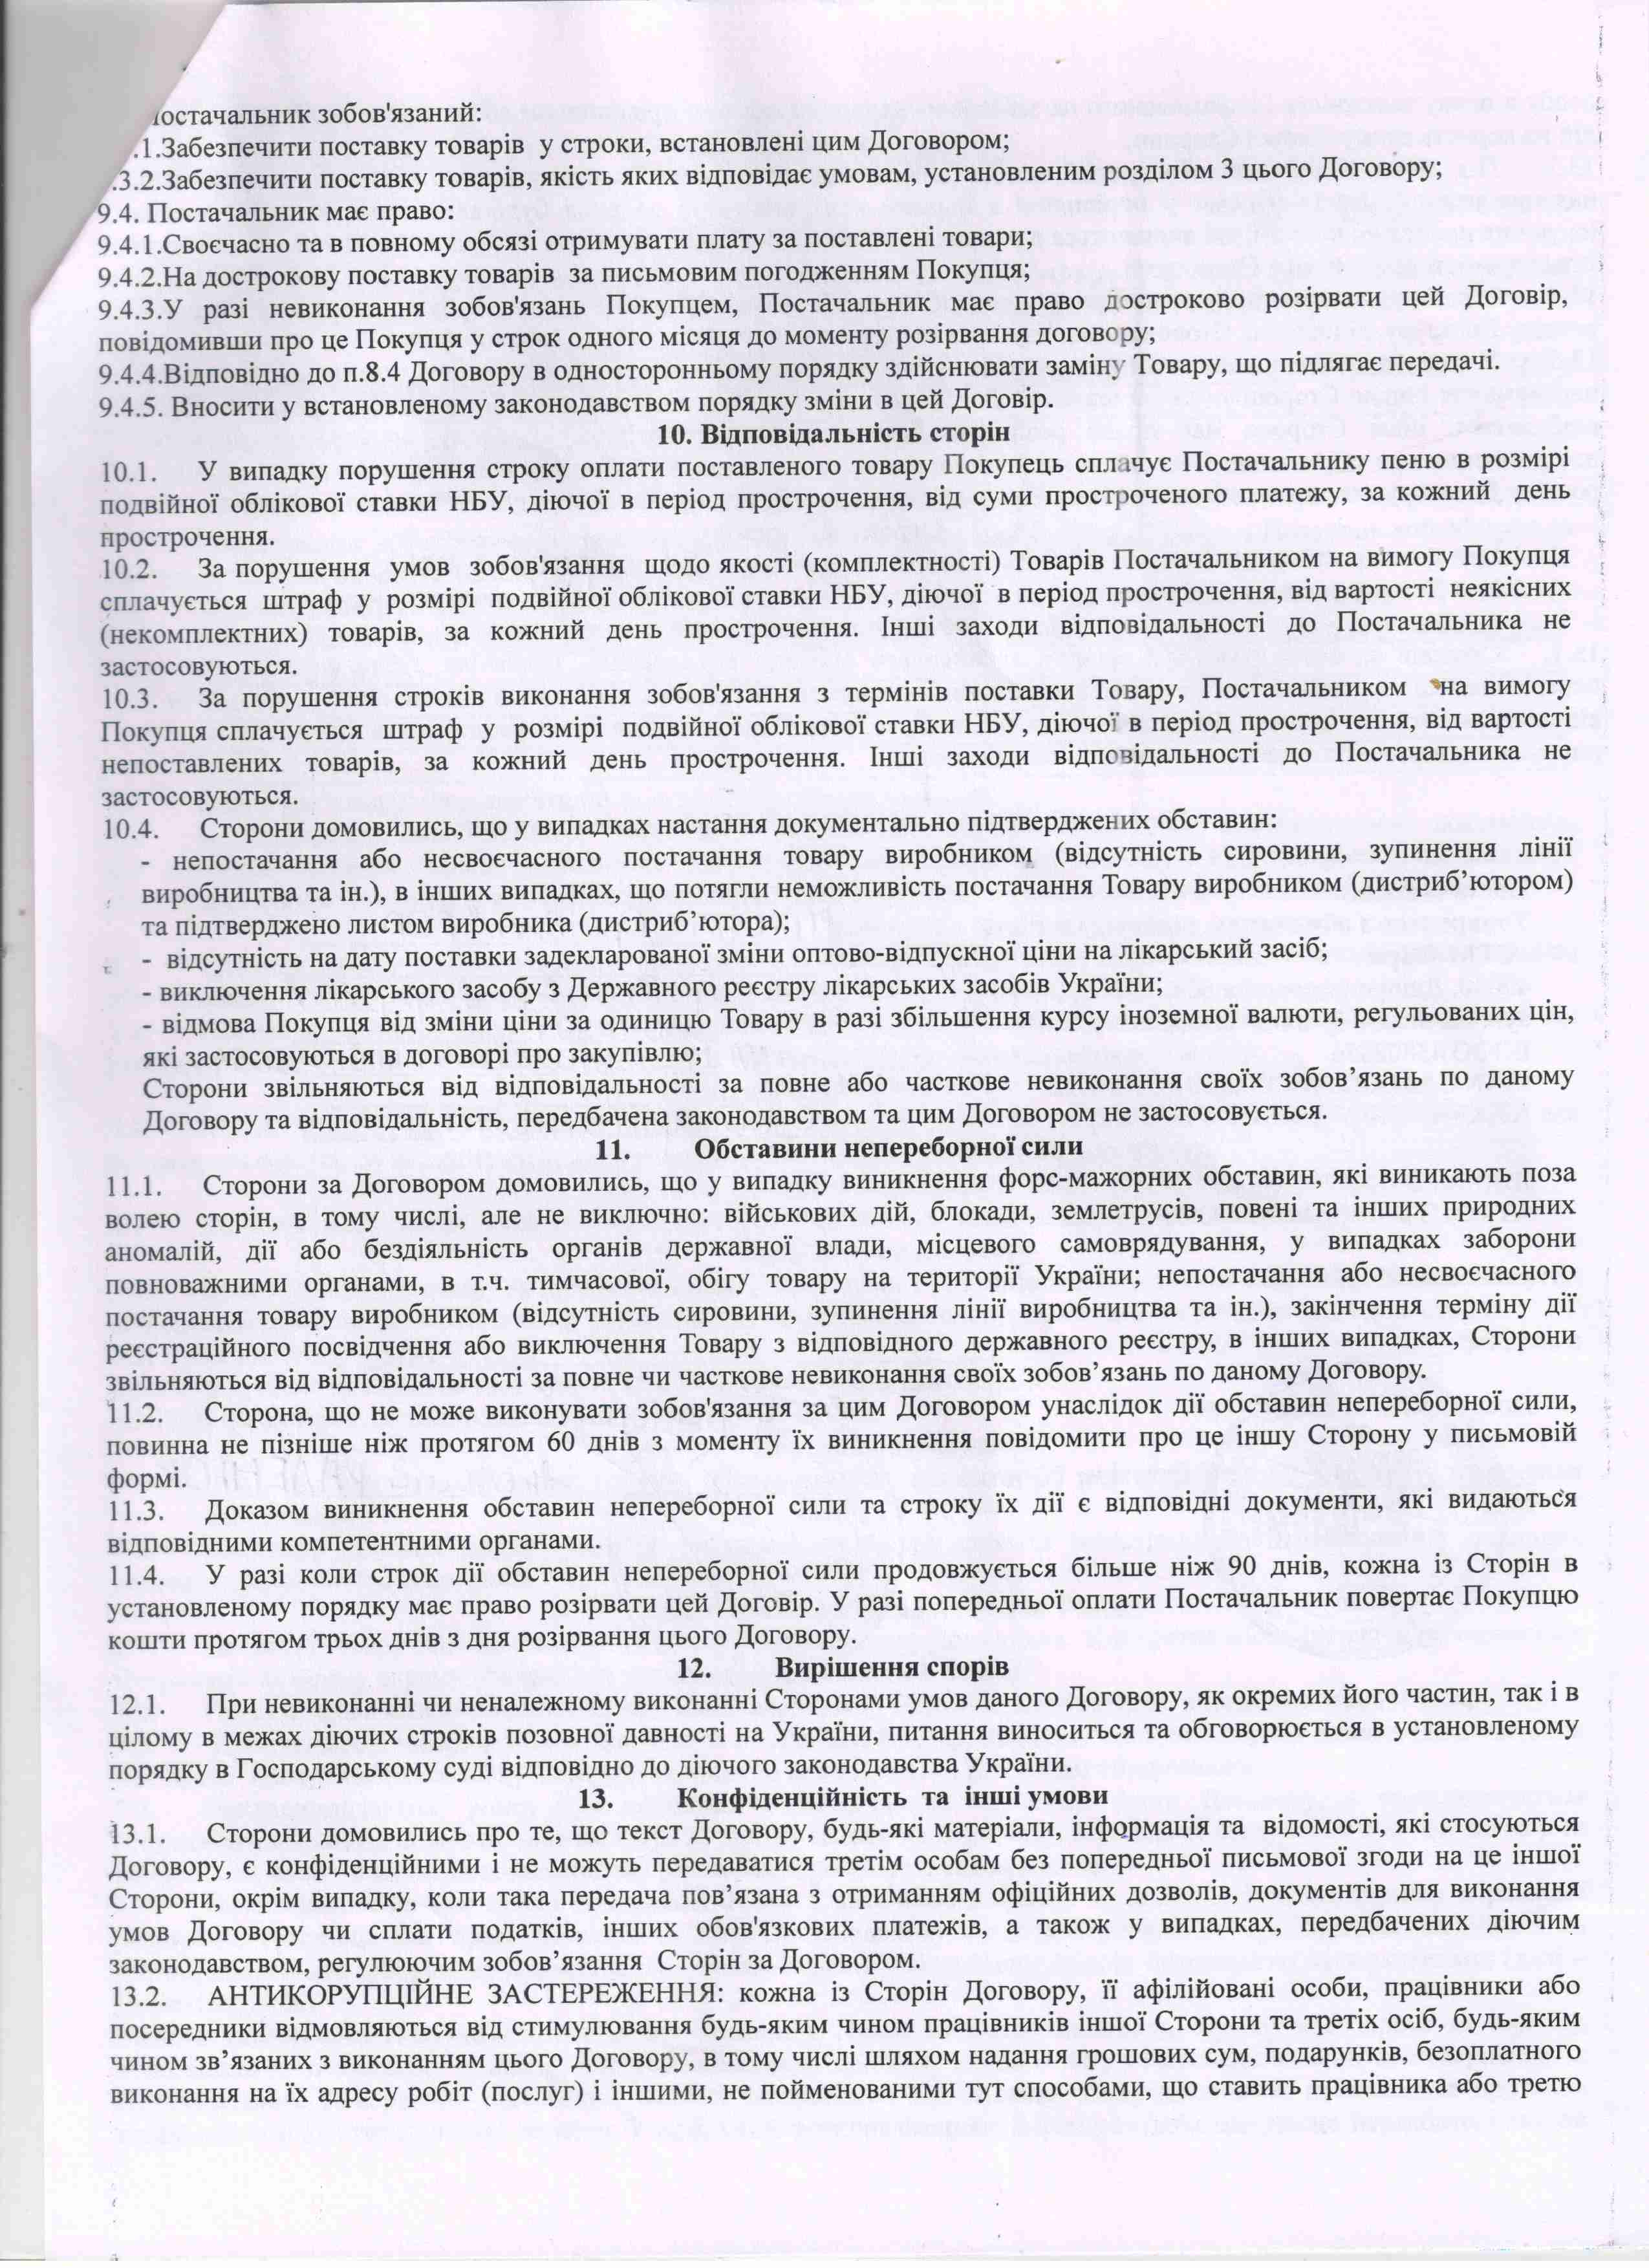 Договір №63 від 18.05.2021 р.